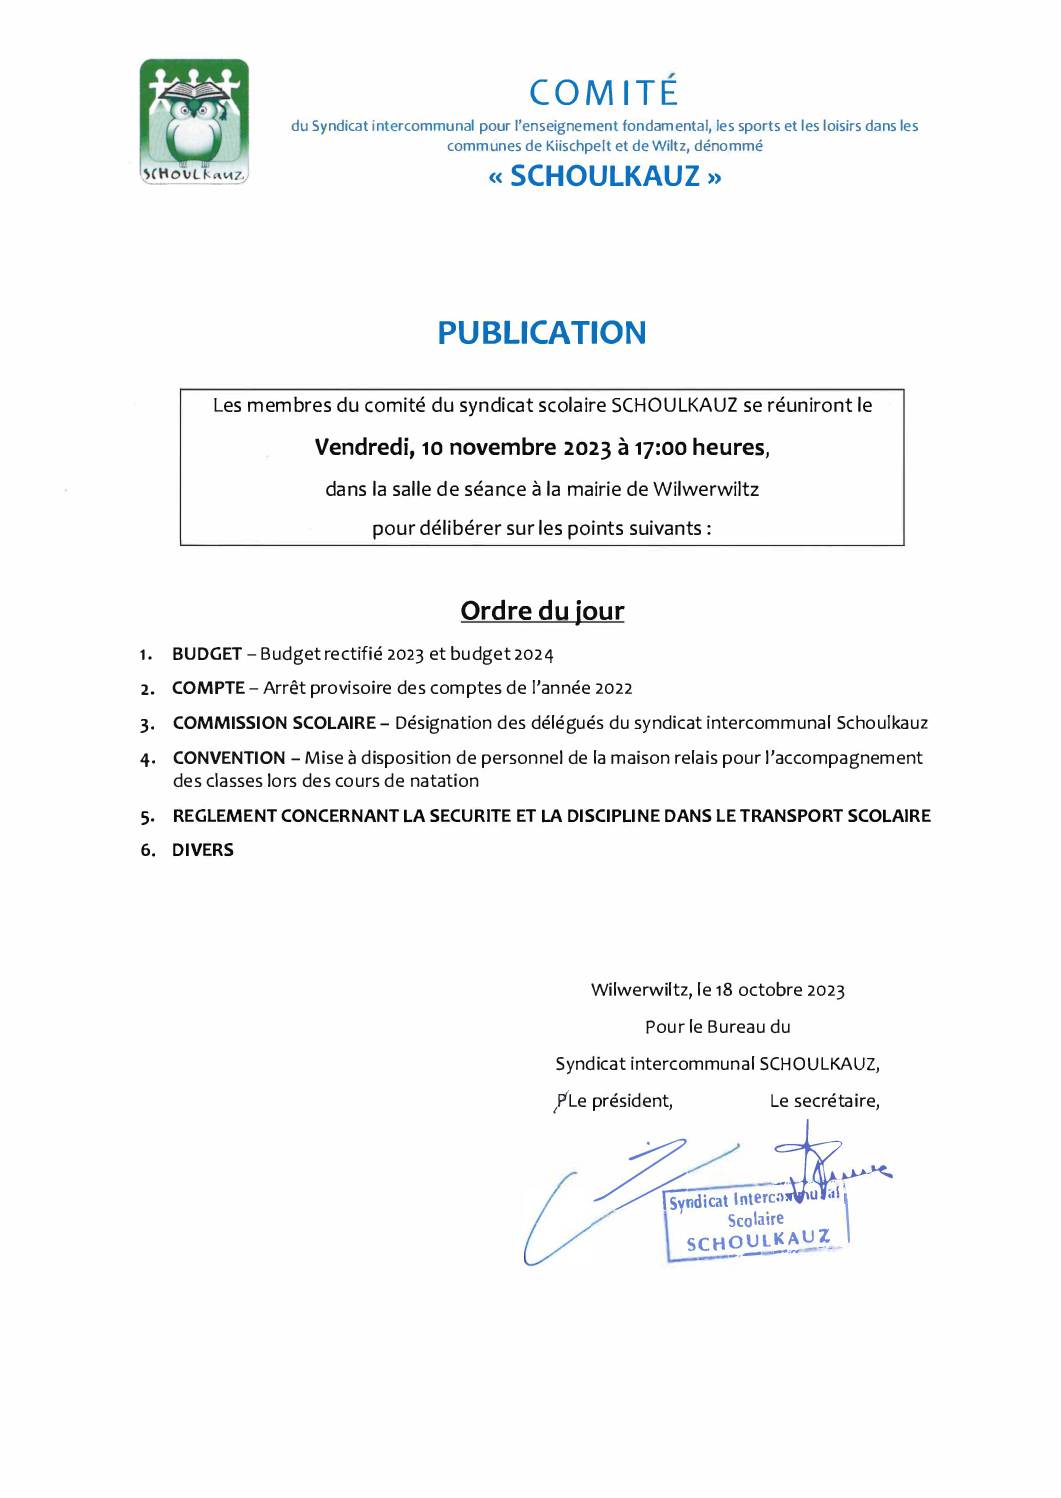 Comité Schoulkauz 10 novembre 2023 - Ordre du jour